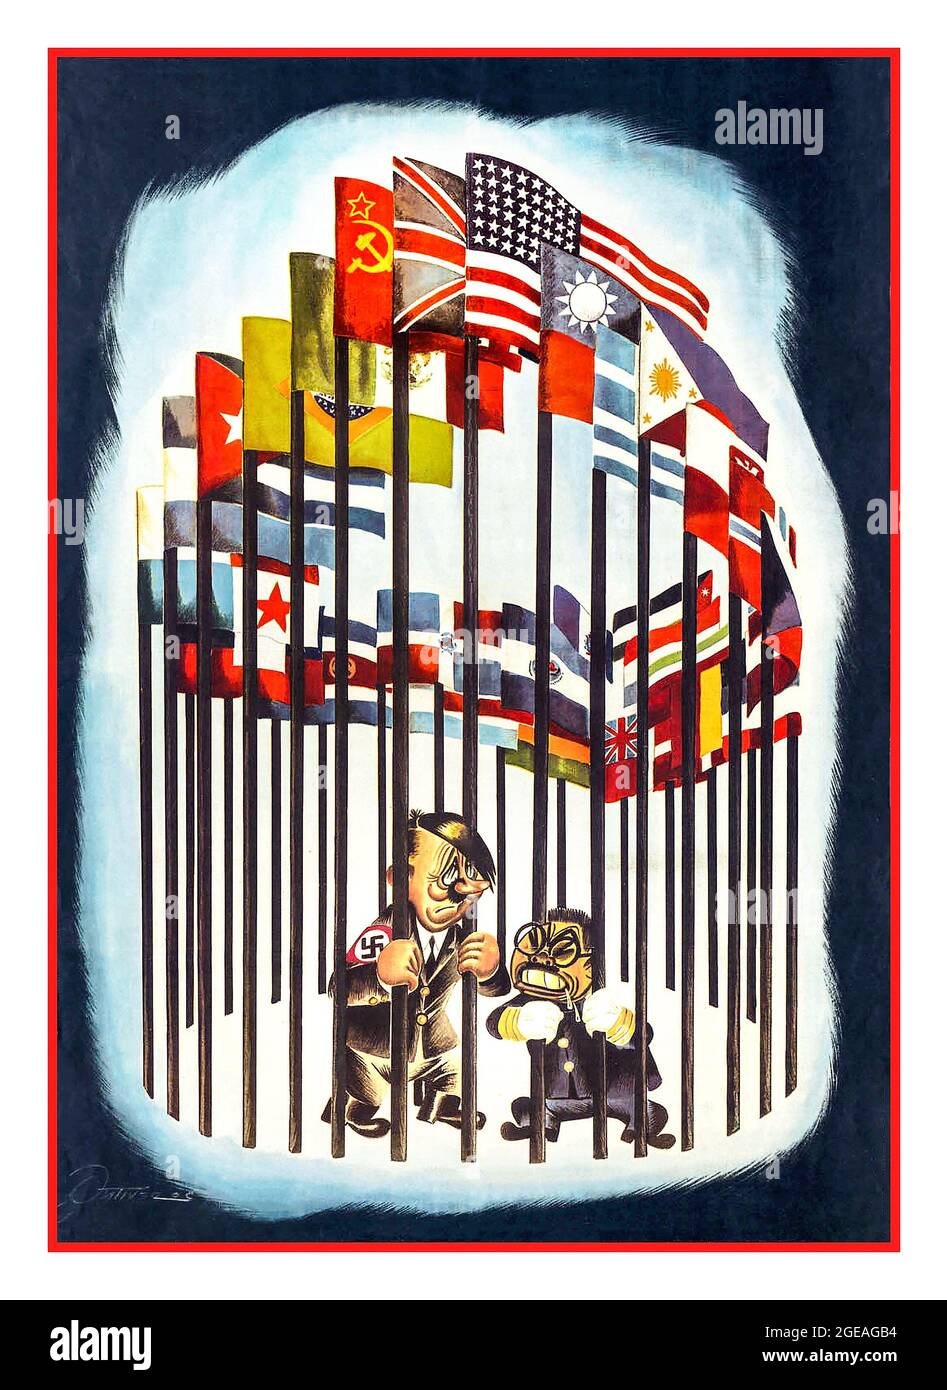 WW2 Cartel de Propaganda de 1940 con caricaturas de dibujos animados de Adolf Hitler La Alemania Nazi y Hideki Tōjō El Japón Imperial se mostraron encarcelados por el equipo de postes de bandera cercada de los aliados victoriosos de la Segunda Guerra Mundial, incluyendo la Unión Soviética de los Estados Unidos y el Reino Unido Foto de stock